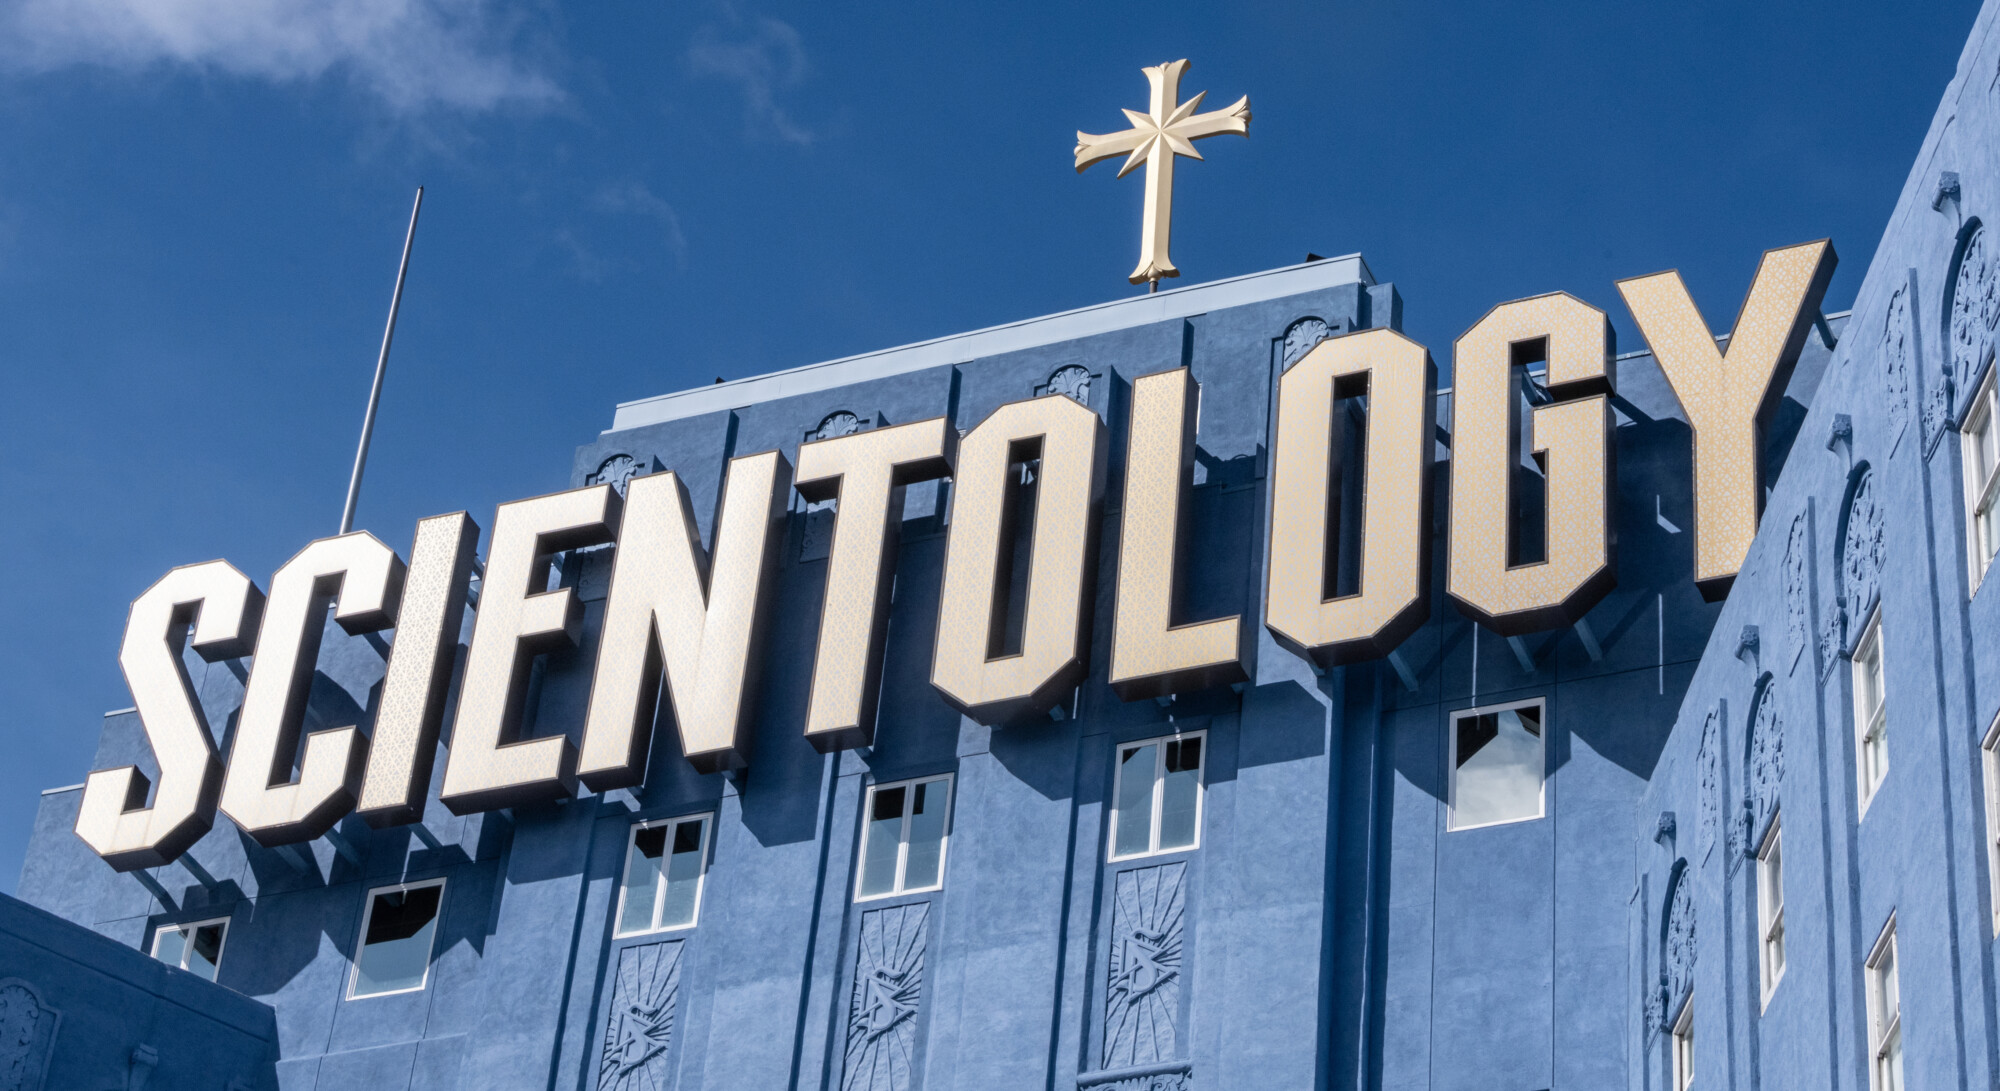 De downfall van Scientology